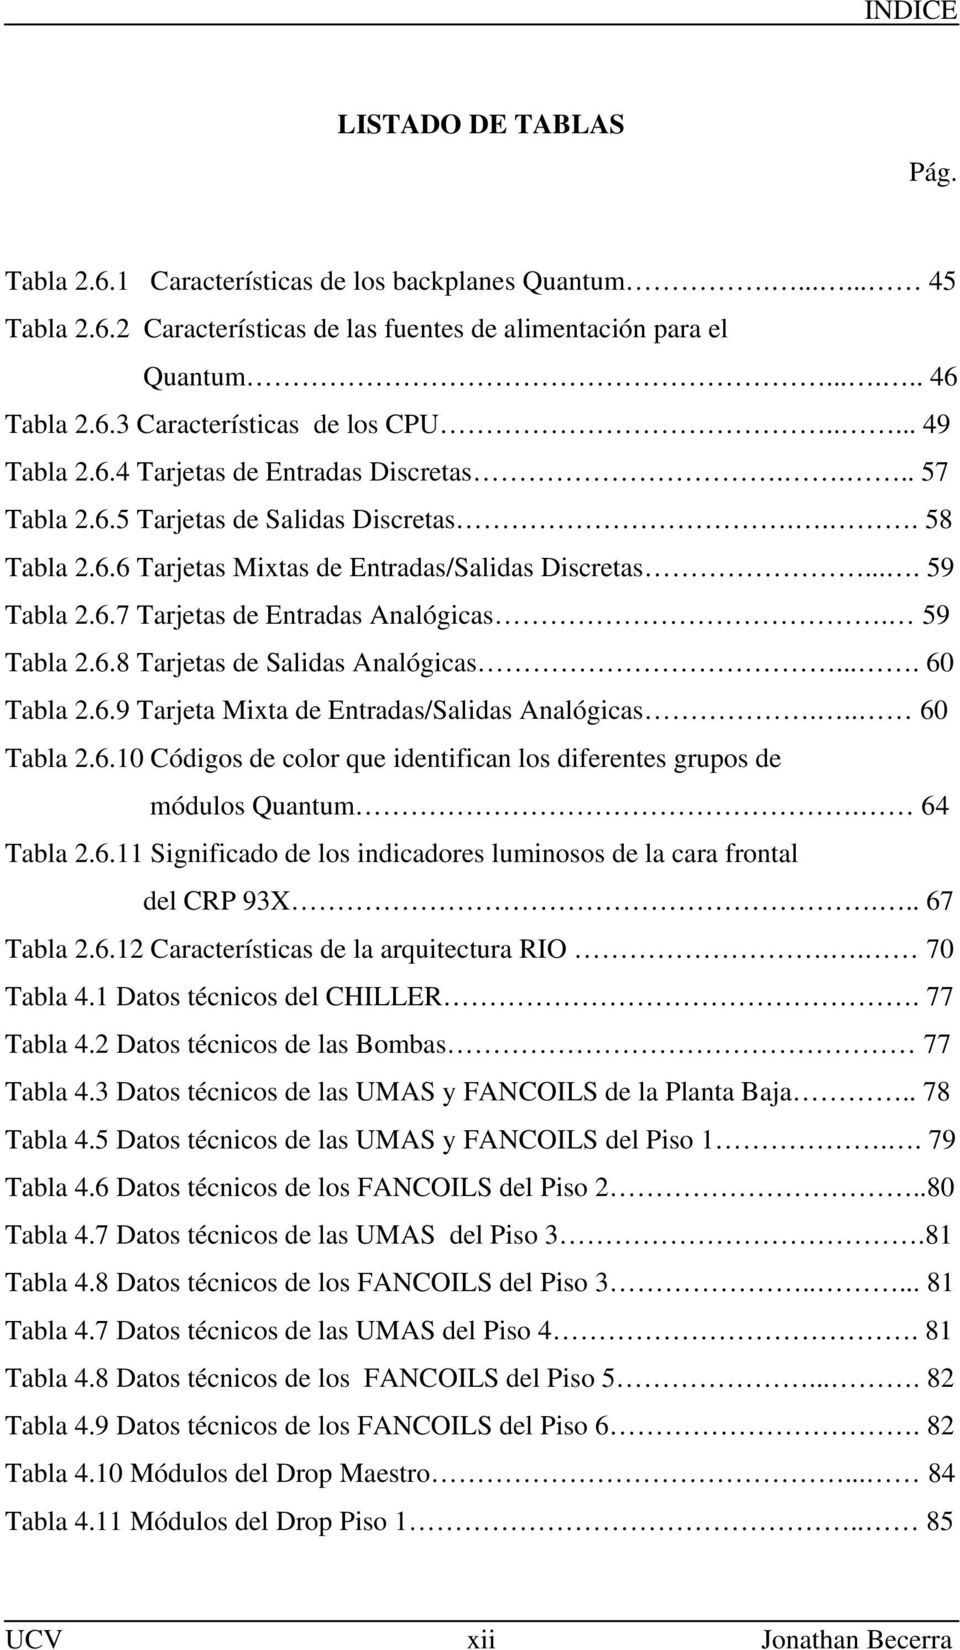 59 Tabla 2.6.8 Tarjetas de Salidas Analógicas.... 60 Tabla 2.6.9 Tarjeta Mixta de Entradas/Salidas Analógicas... 60 Tabla 2.6.10 Códigos de color que identifican los diferentes grupos de módulos Quantum.